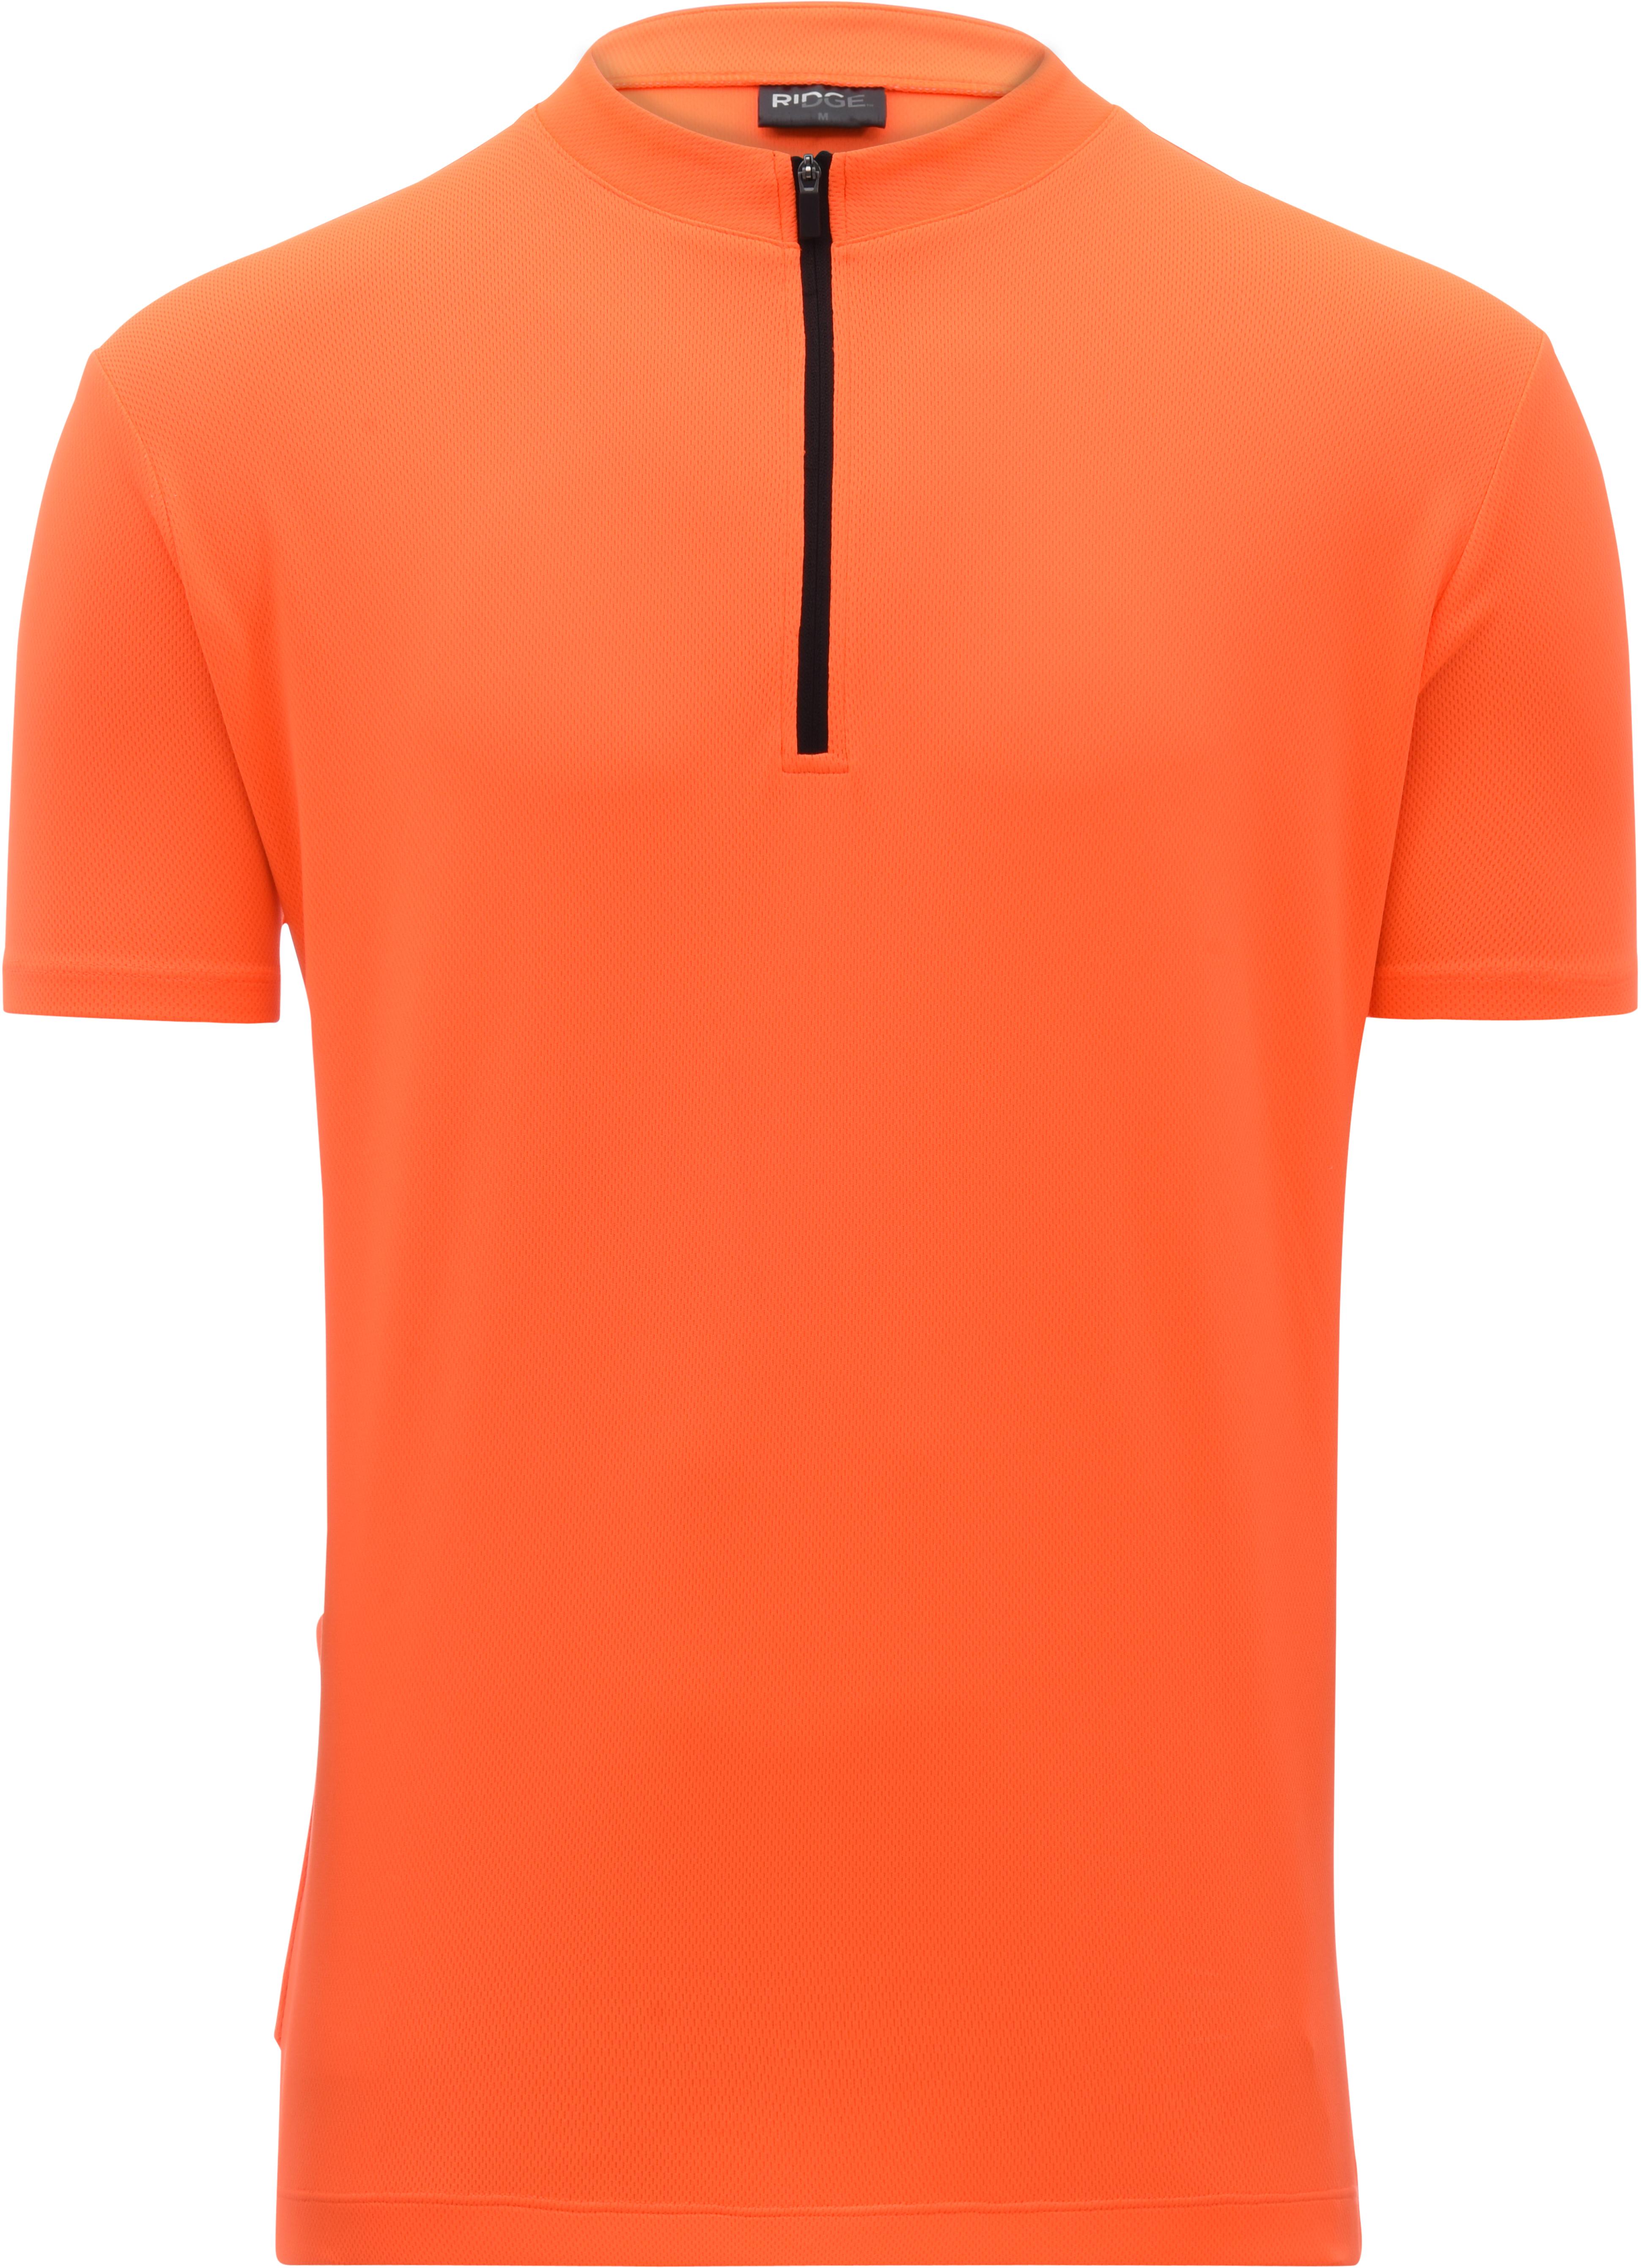 Ridge Mens Cycling Jersey - Orange X Large